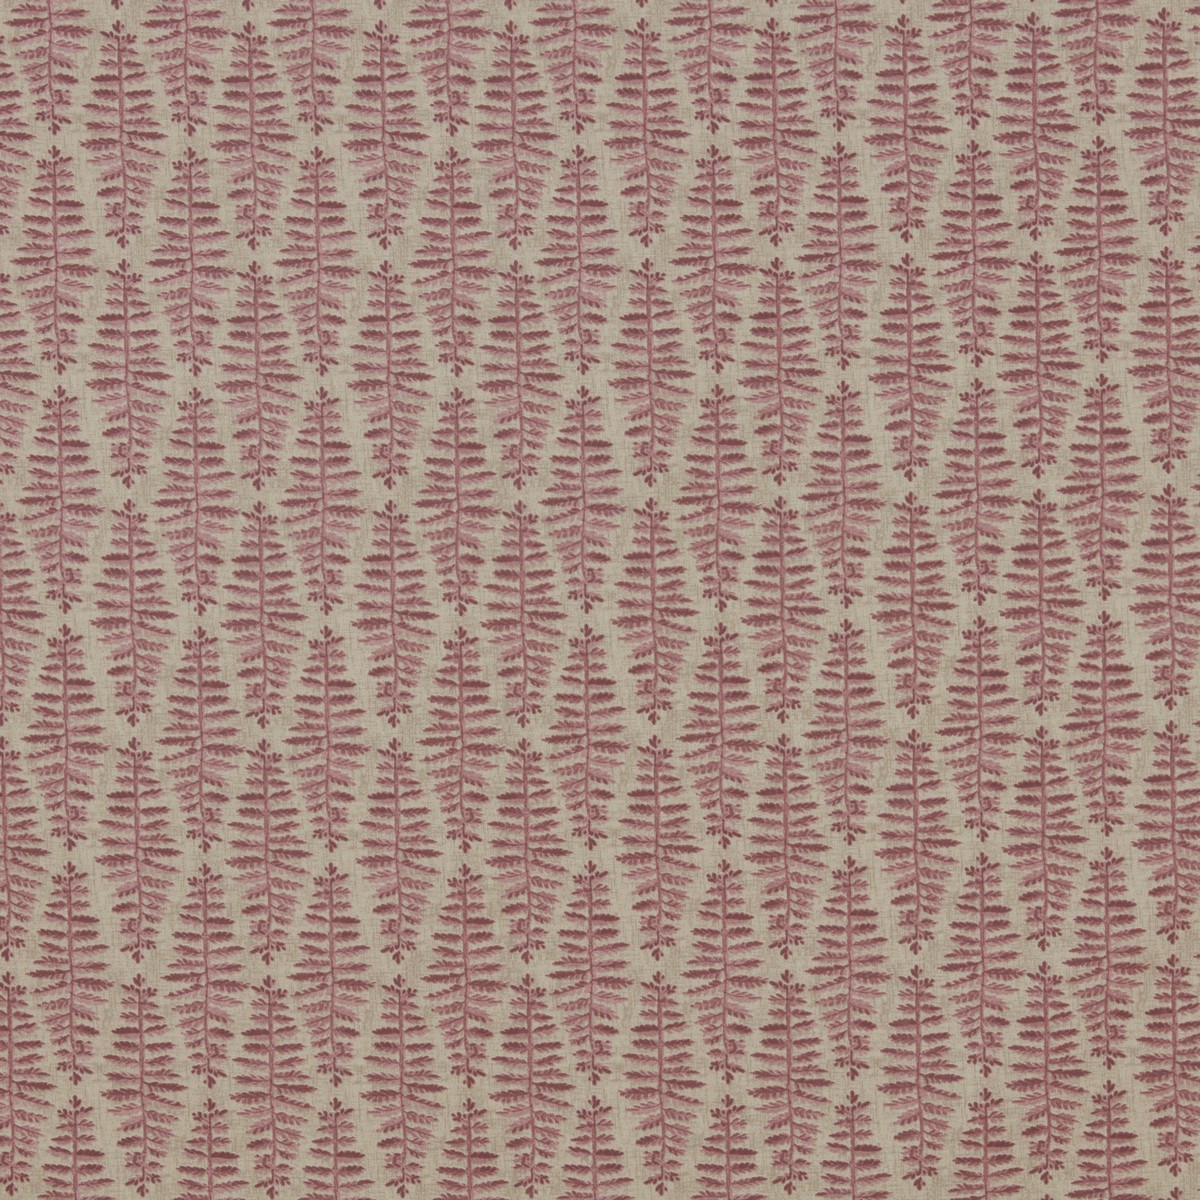 Fernia Dusty Pink Fabric by iLiv